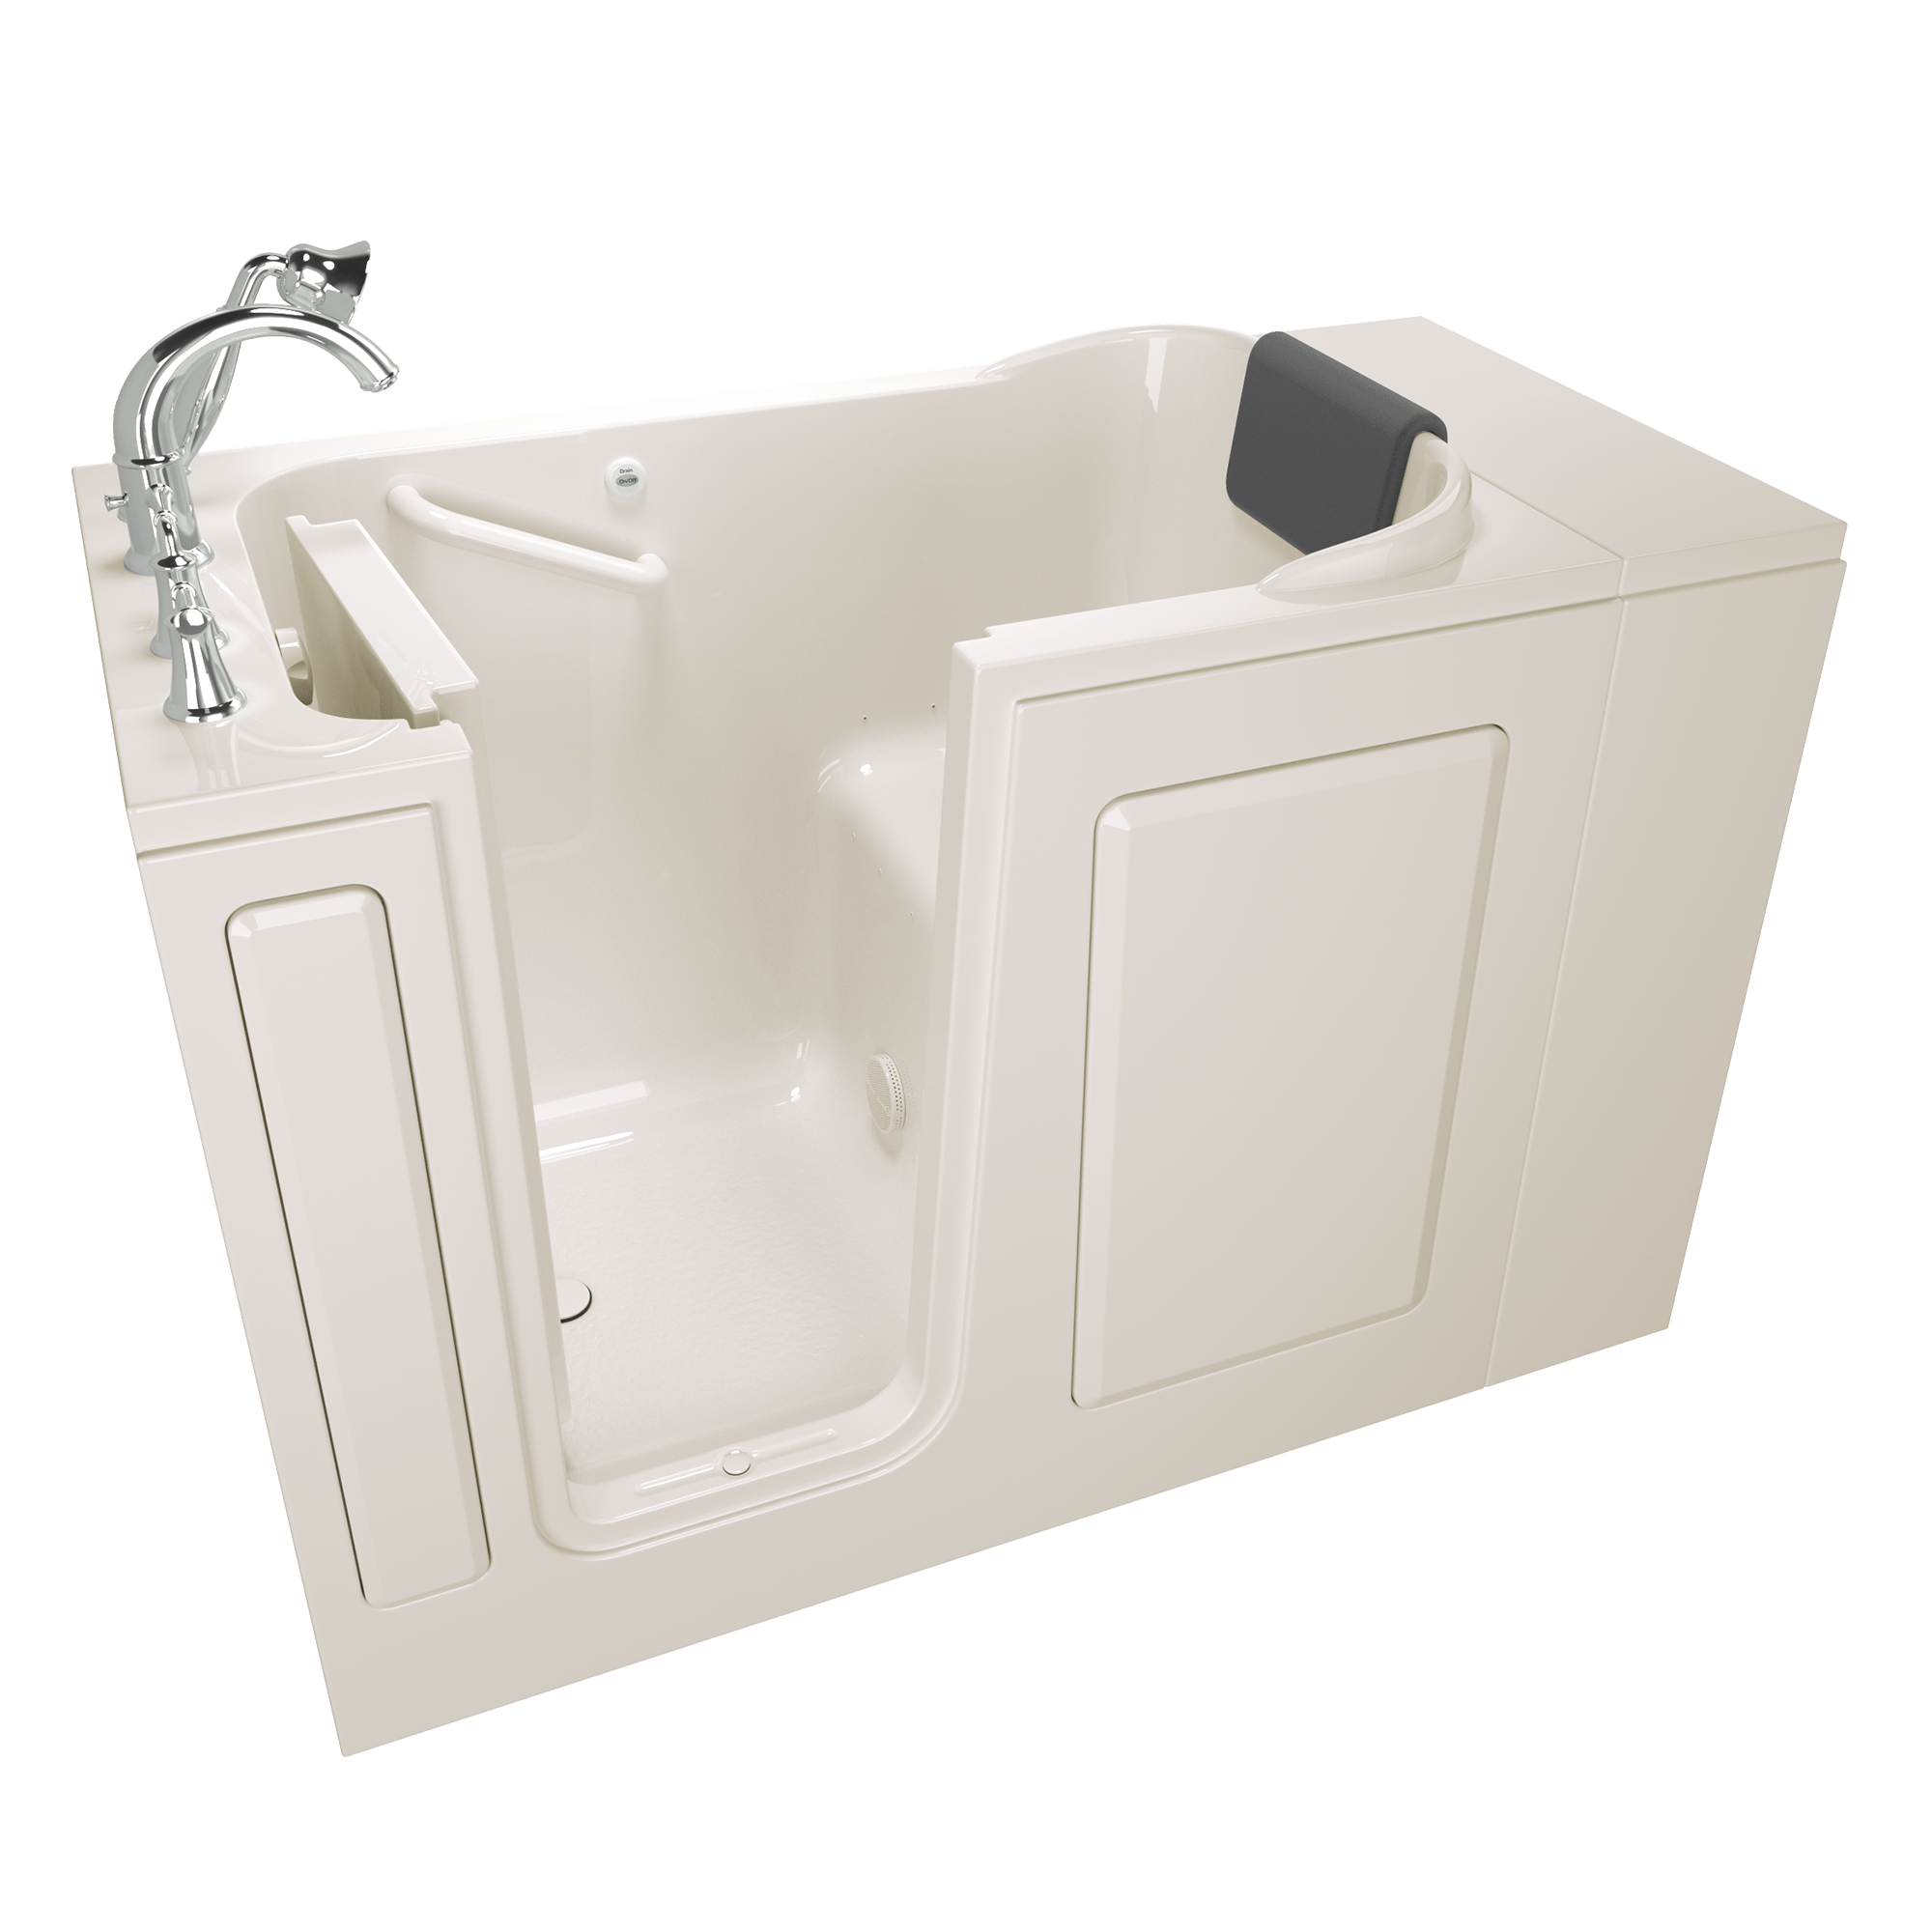 Gelcoat Premium Series 48x28 Inch Soaking Walk-In Bathtub - Left Hand Door and Drain